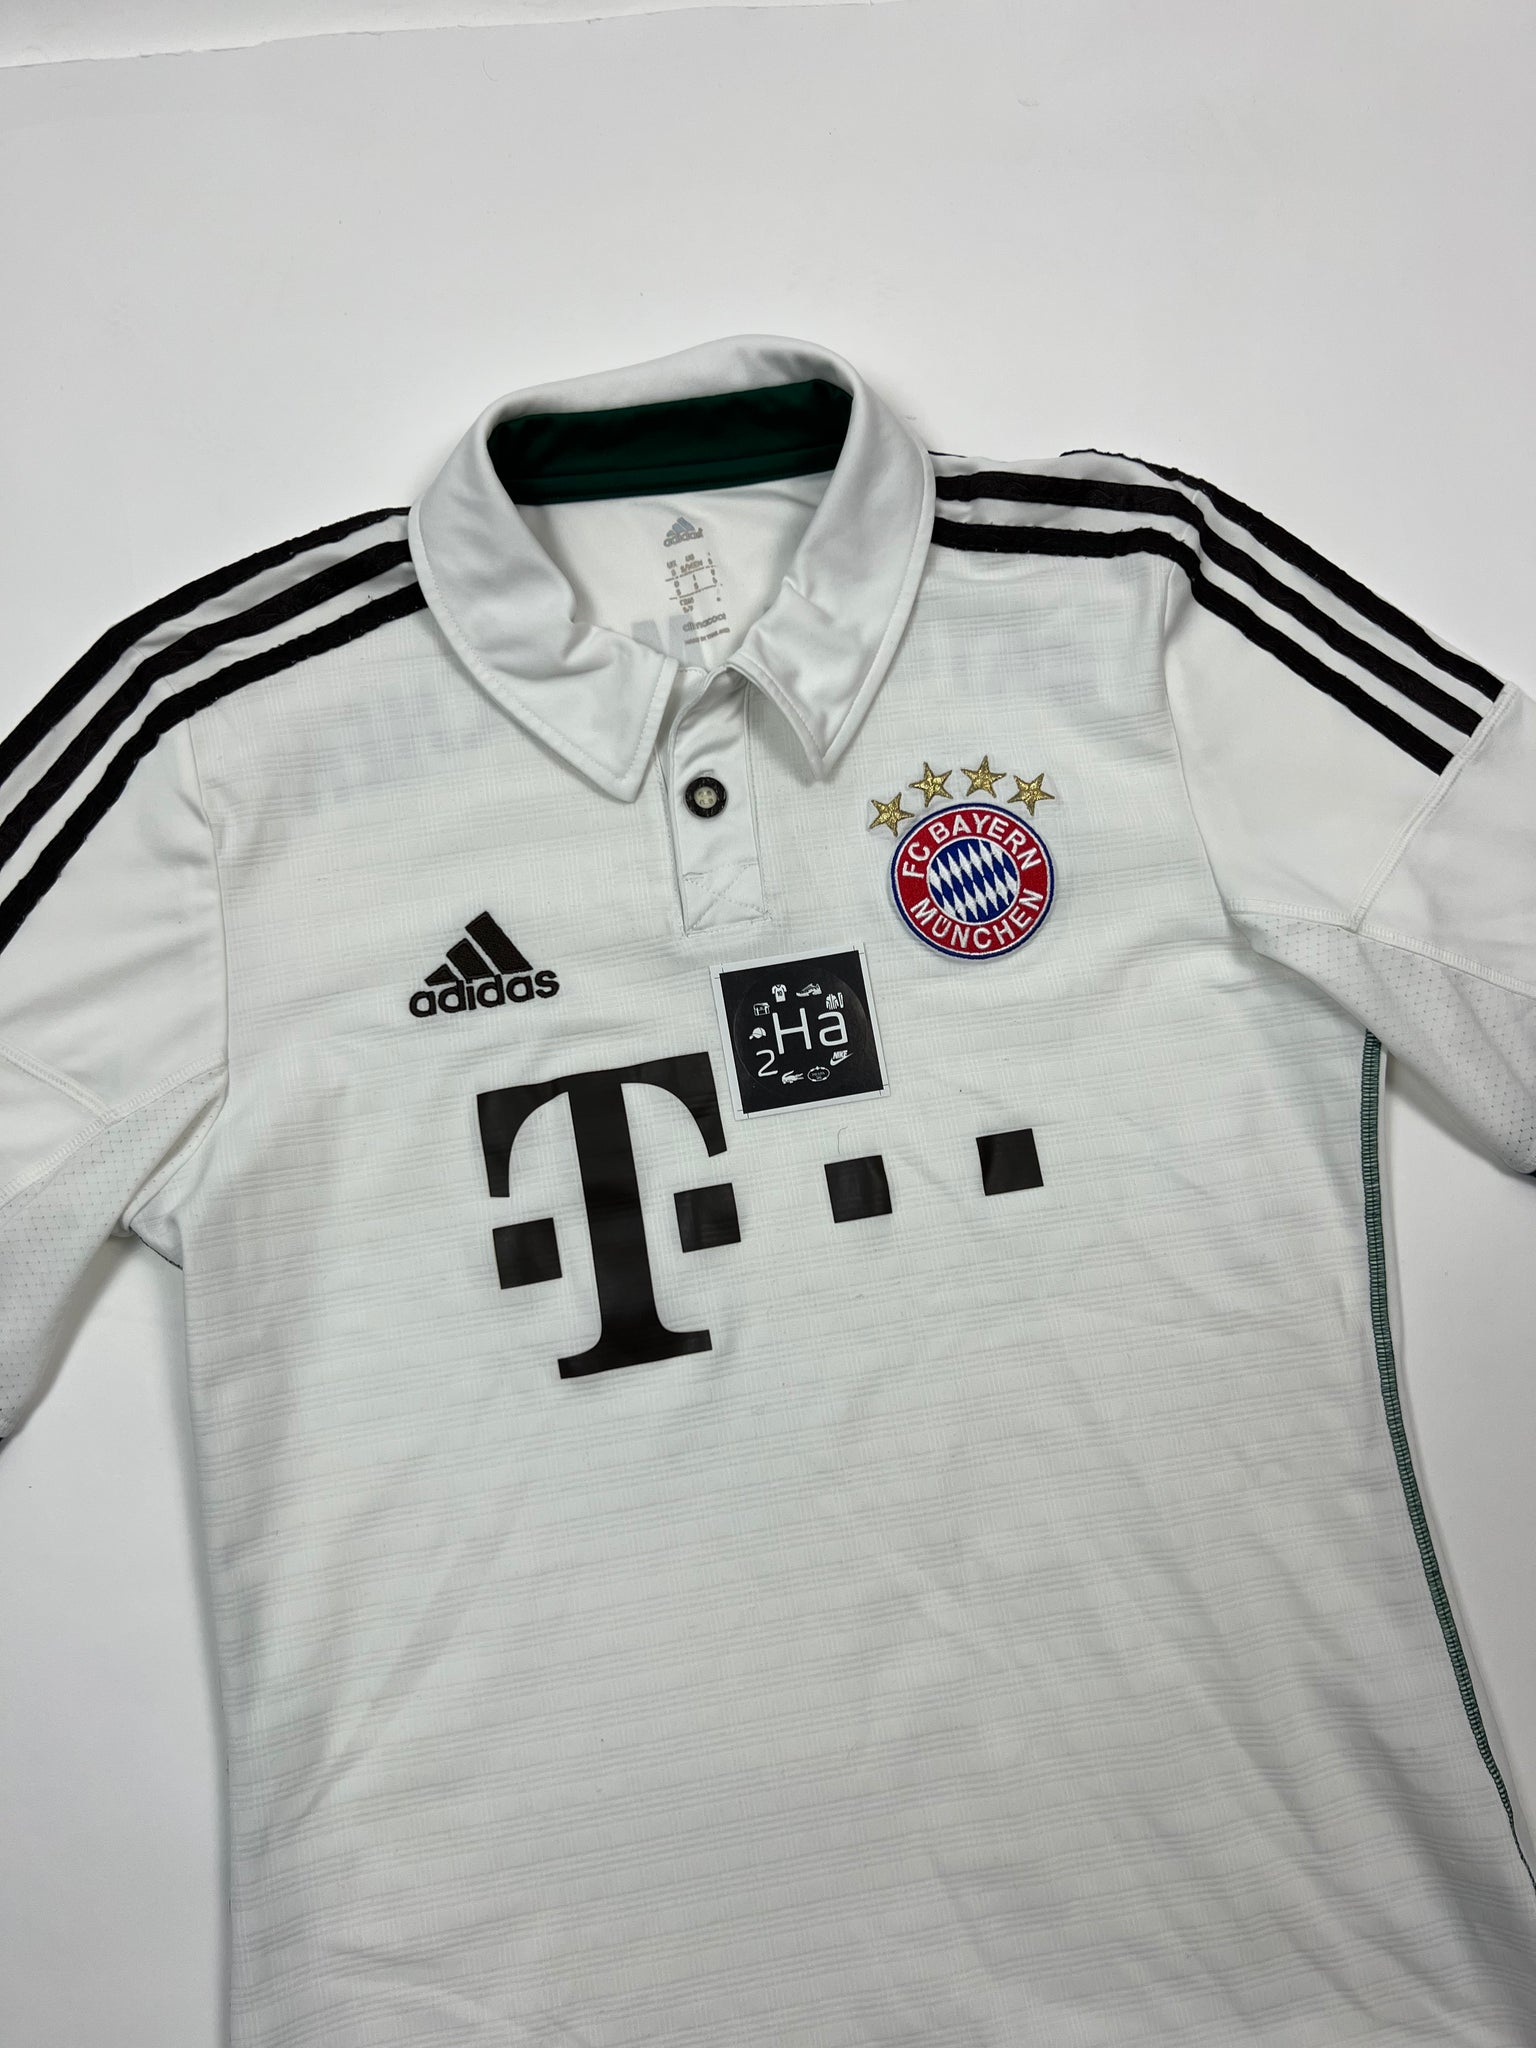 Adidas Bayern Munich Jersey (S)